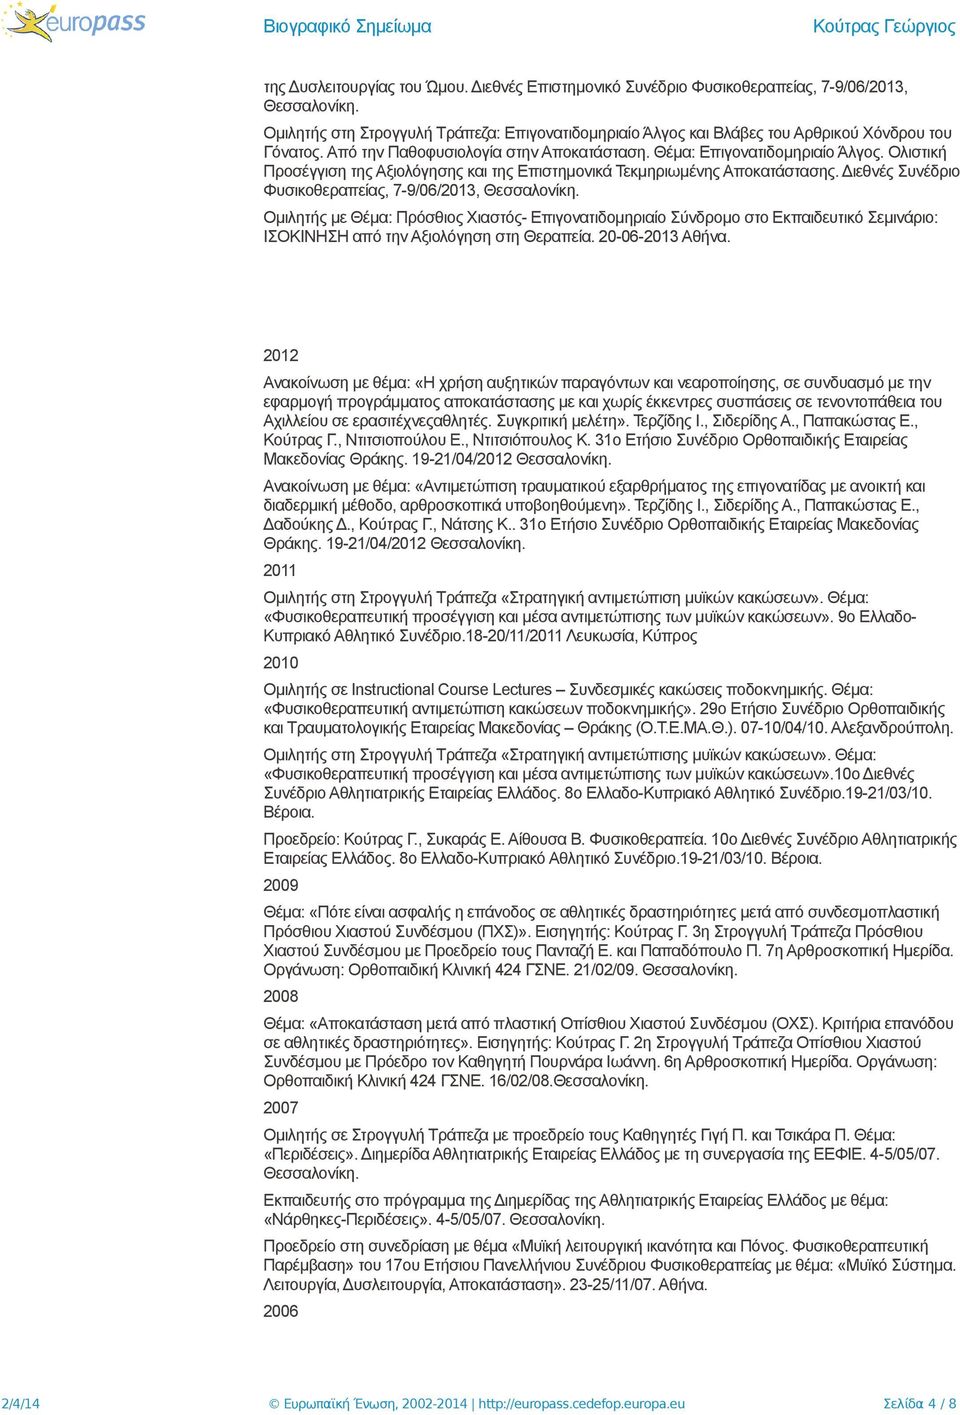 Διεθνές Συνέδριο Φυσικοθεραπείας, 7-9/06/2013, Ομιλητής με Θέμα: Πρόσθιος Χιαστός- Επιγονατιδομηριαίο Σύνδρομο στο Εκπαιδευτικό Σεμινάριο: ΙΣΟΚΙΝΗΣΗ από την Αξιολόγηση στη Θεραπεία. 20-06-2013 Αθήνα.